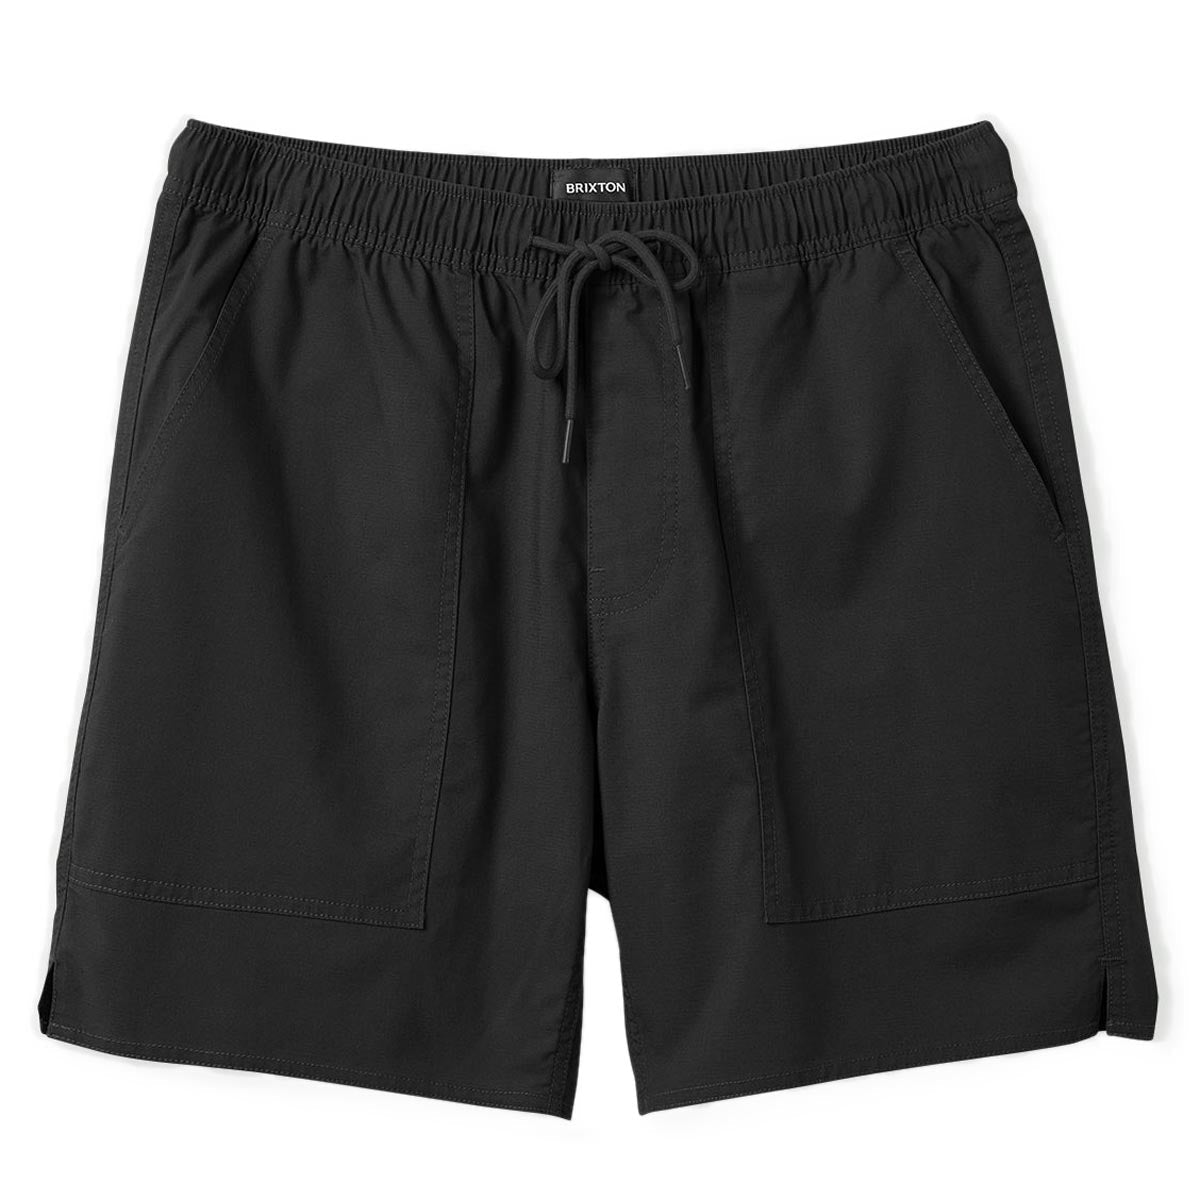 Brixton Everyday Coolmax Shorts - Washed Black image 1